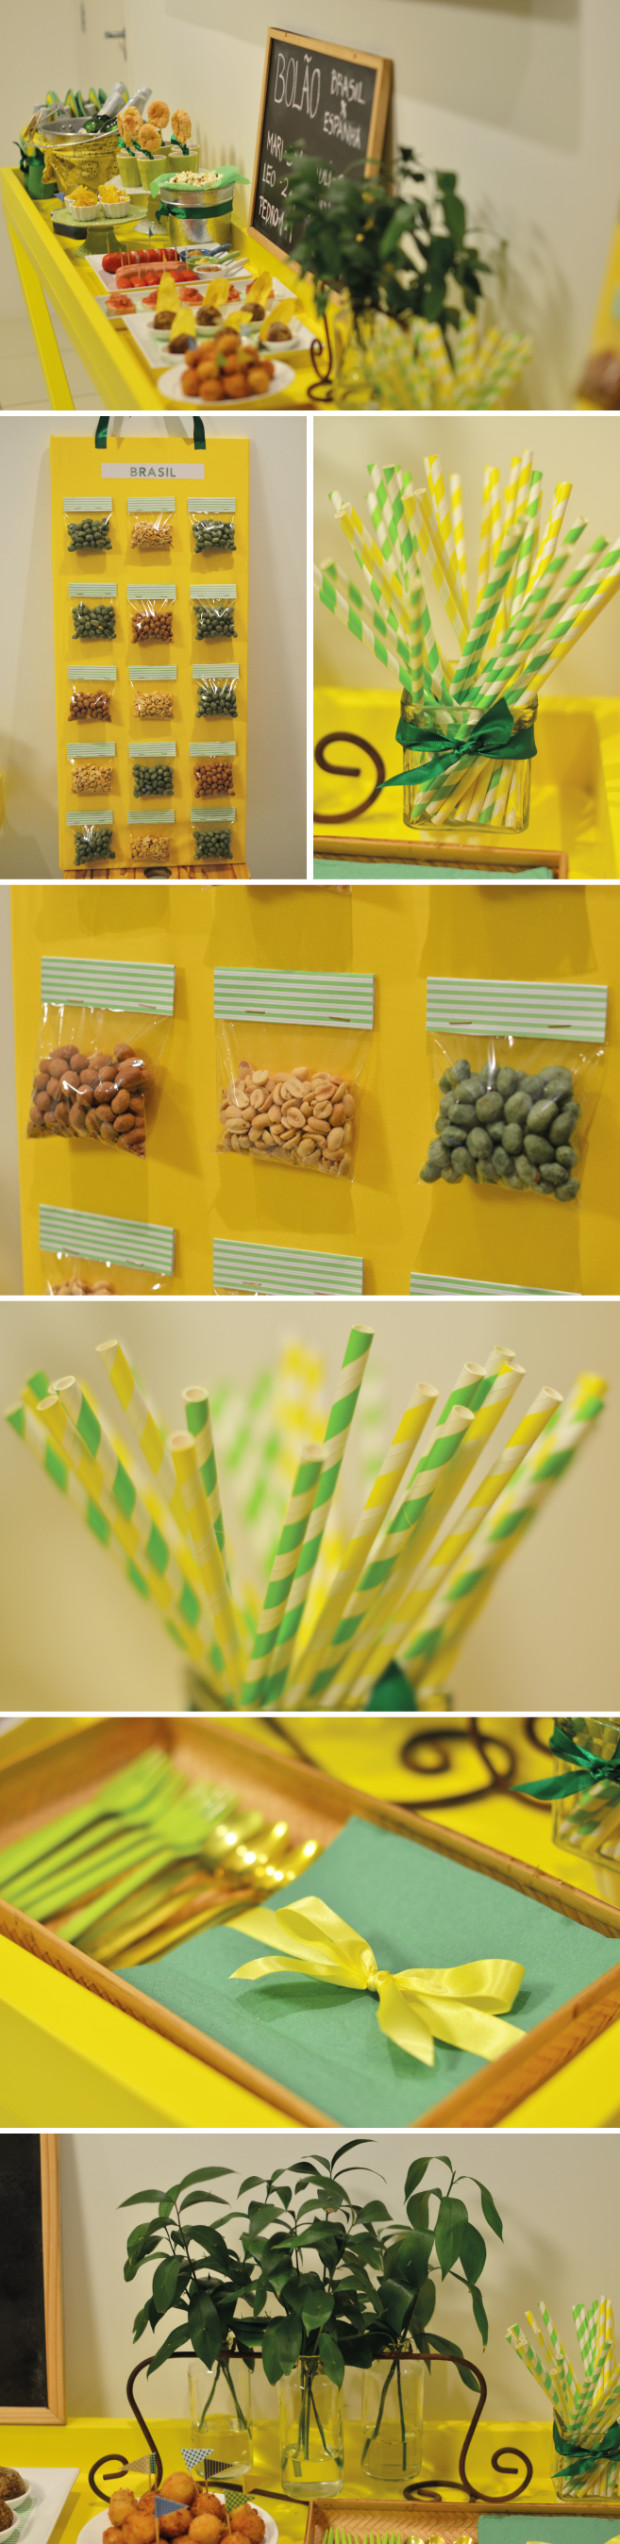 Mix de amendoins sortidos, canudinhos verdes e amarelos, guardanapos com laços e folhas em garrafas para decorar